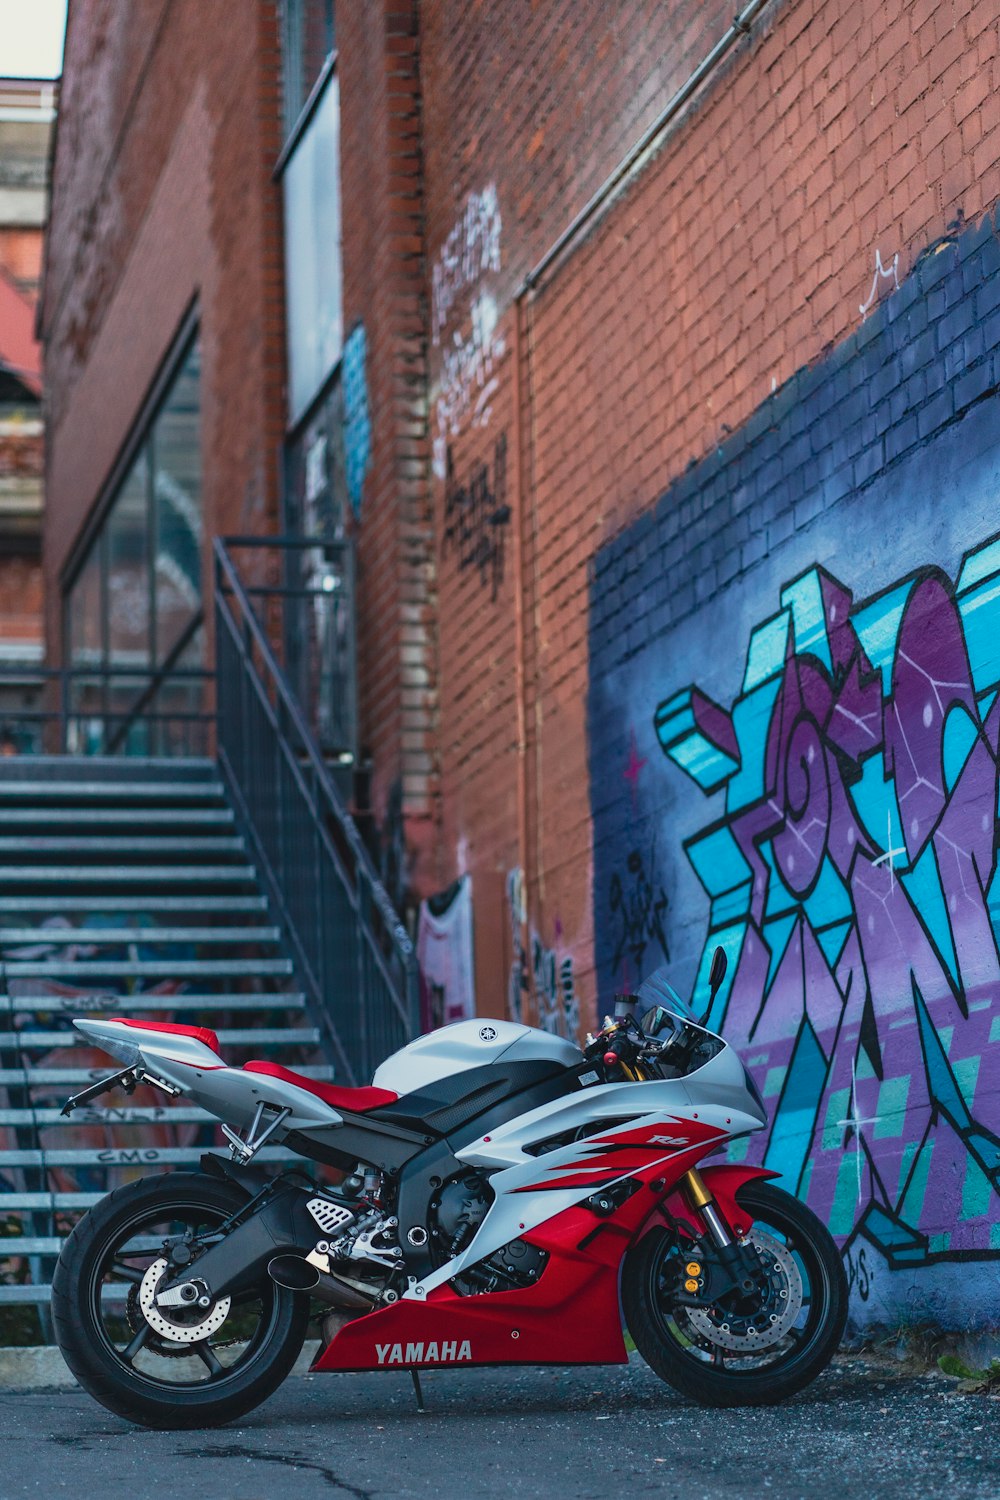 Moto sportiva rossa e nera parcheggiata accanto al muro di mattoni marroni